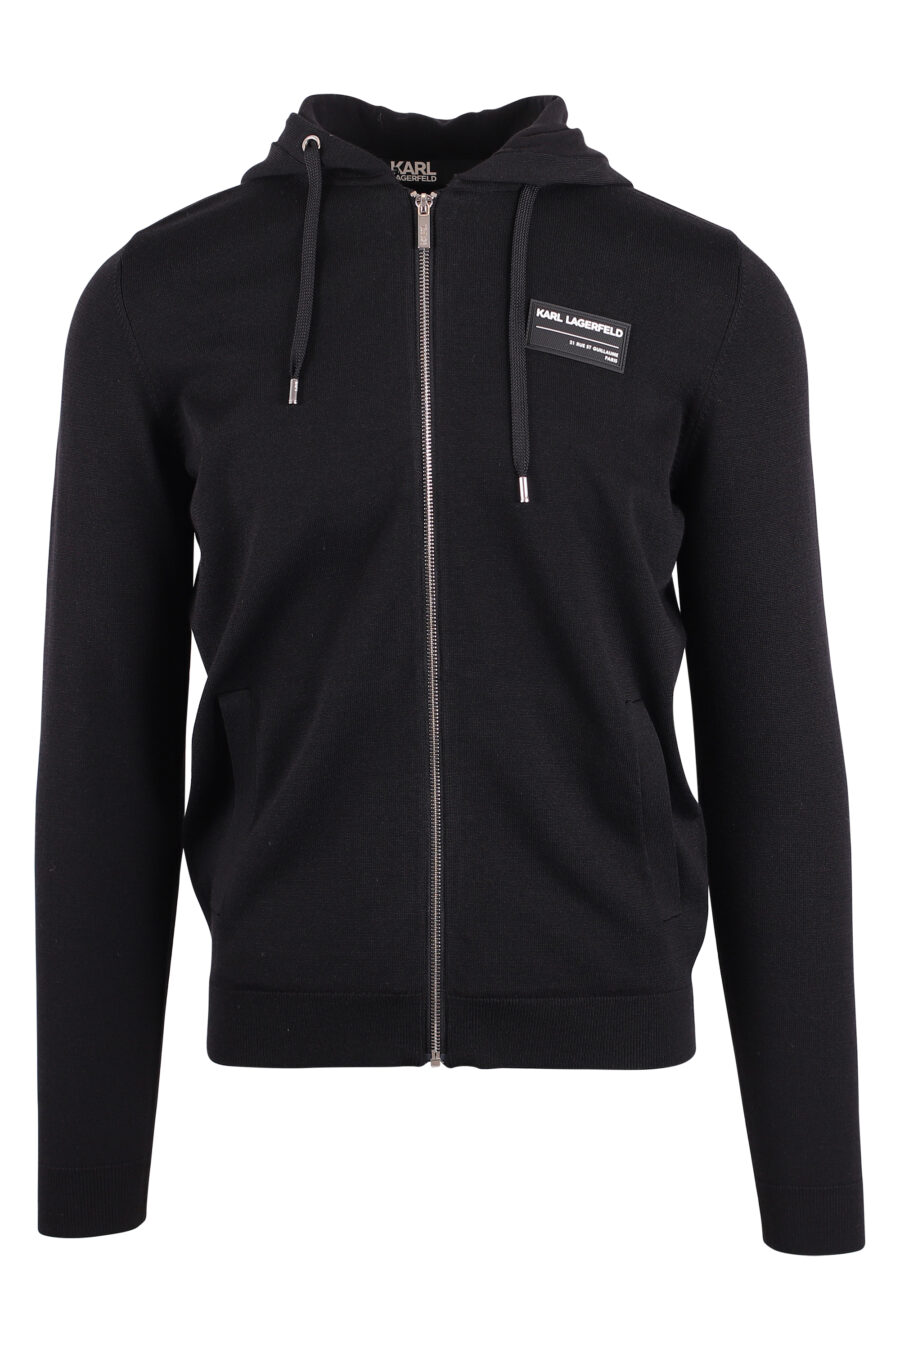 Schwarzes Kapuzensweatshirt mit Reißverschluss und weißem Logoaufnäher - IMG 9421